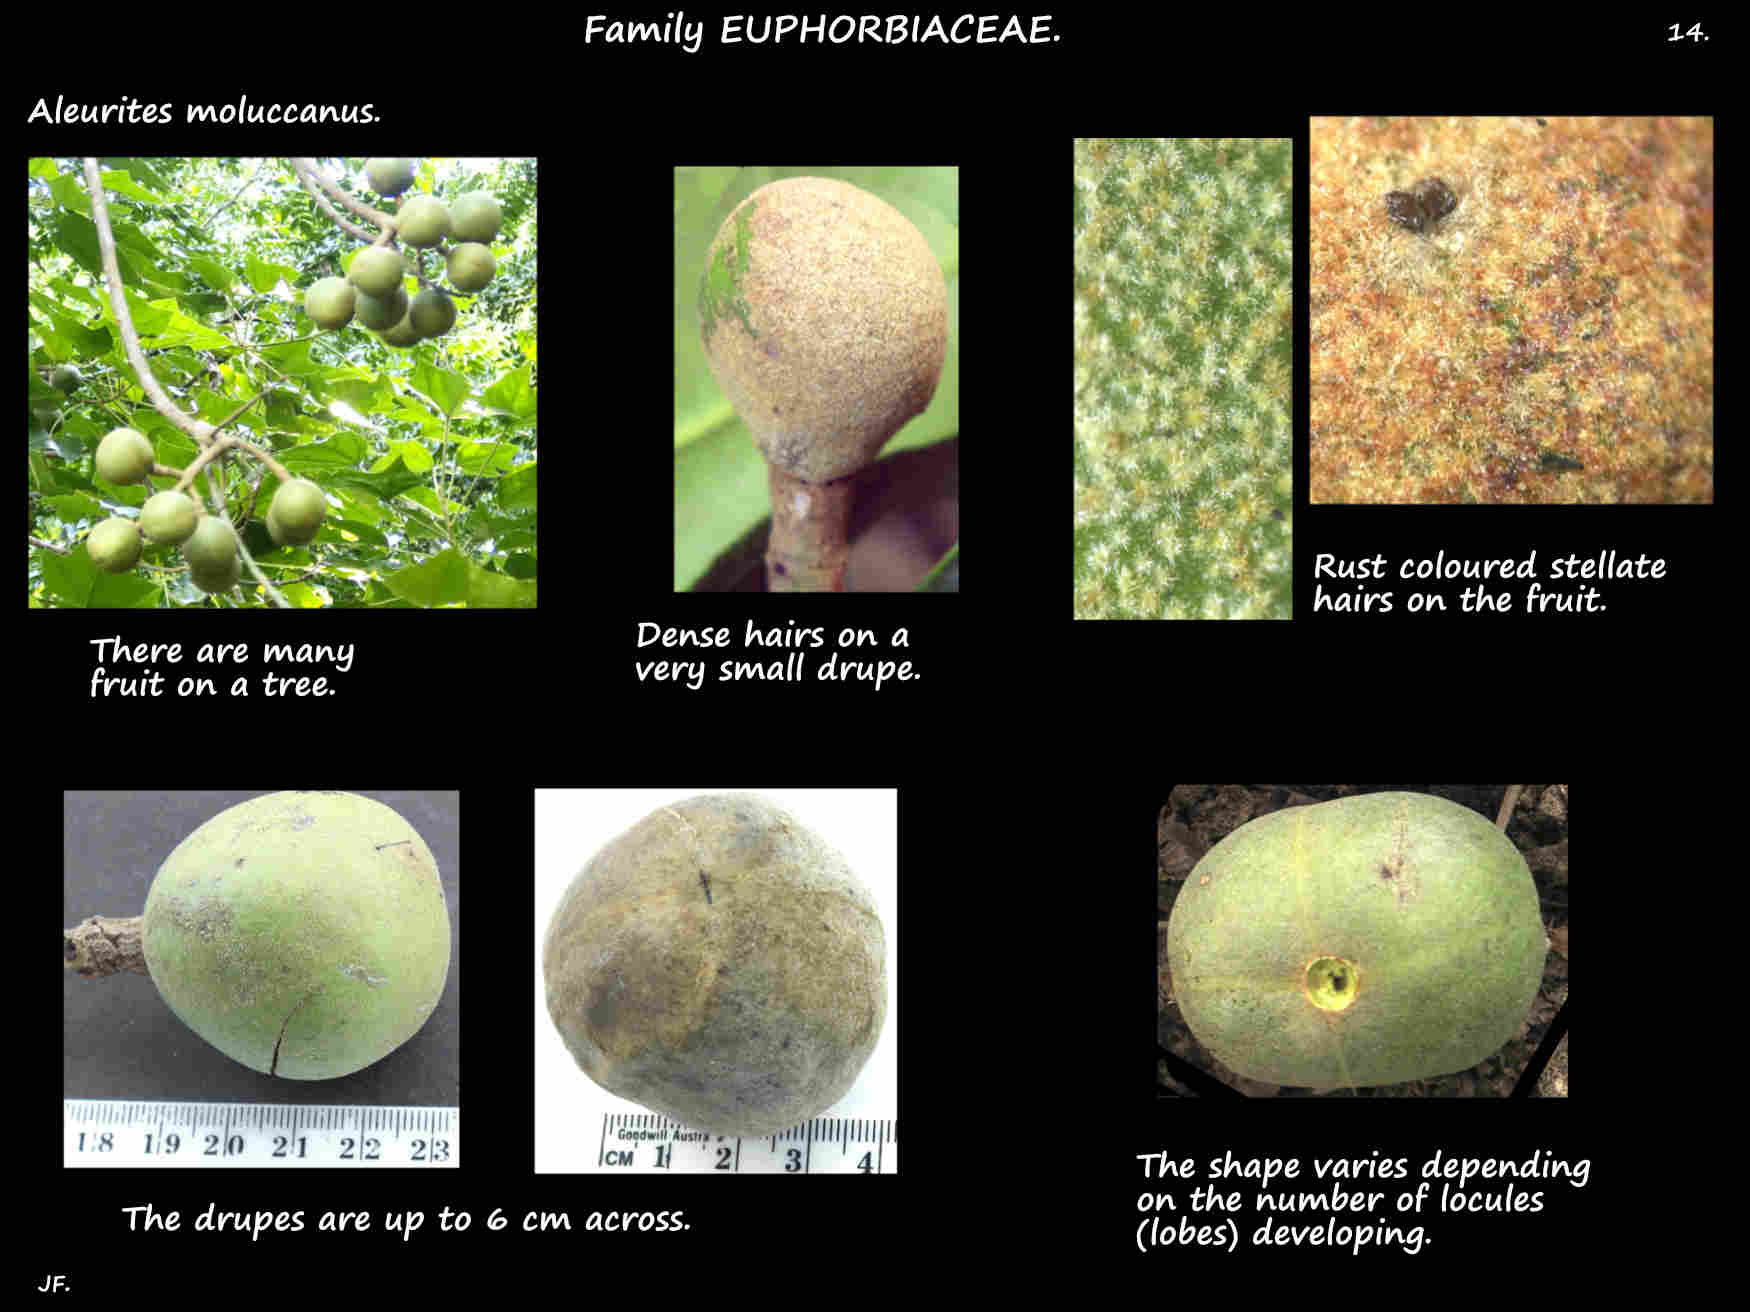 14 Aleurites moluccanus fruit are drupes